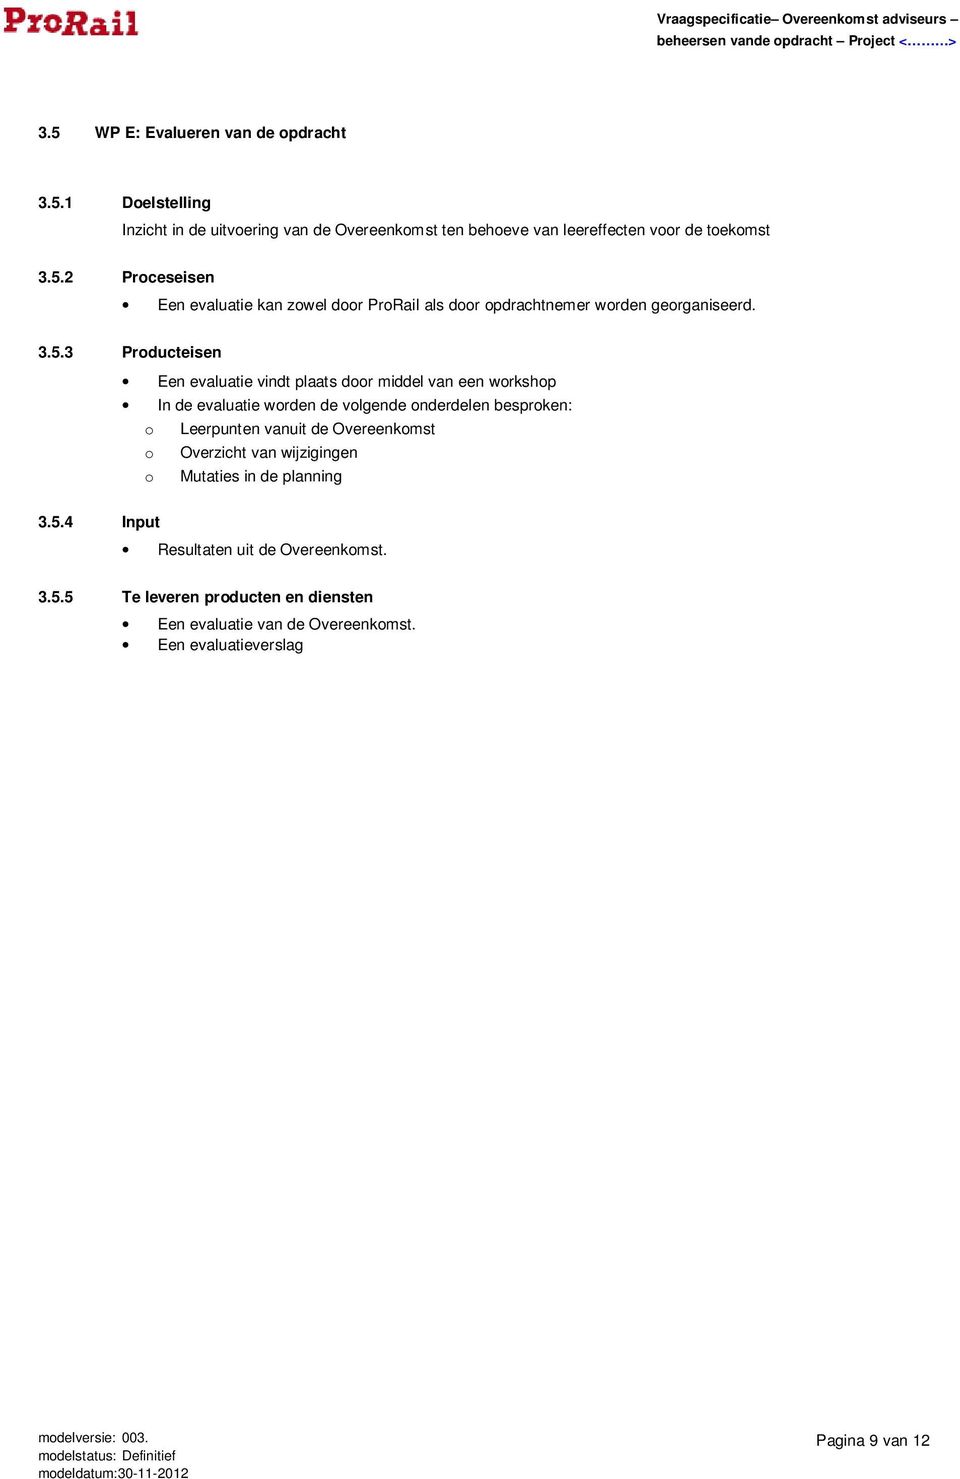 Overeenkomst o Overzicht van wijzigingen o Mutaties in de planning 3.5.4 Input Resultaten uit de Overeenkomst. 3.5.5 Te leveren producten en diensten Een evaluatie van de Overeenkomst.